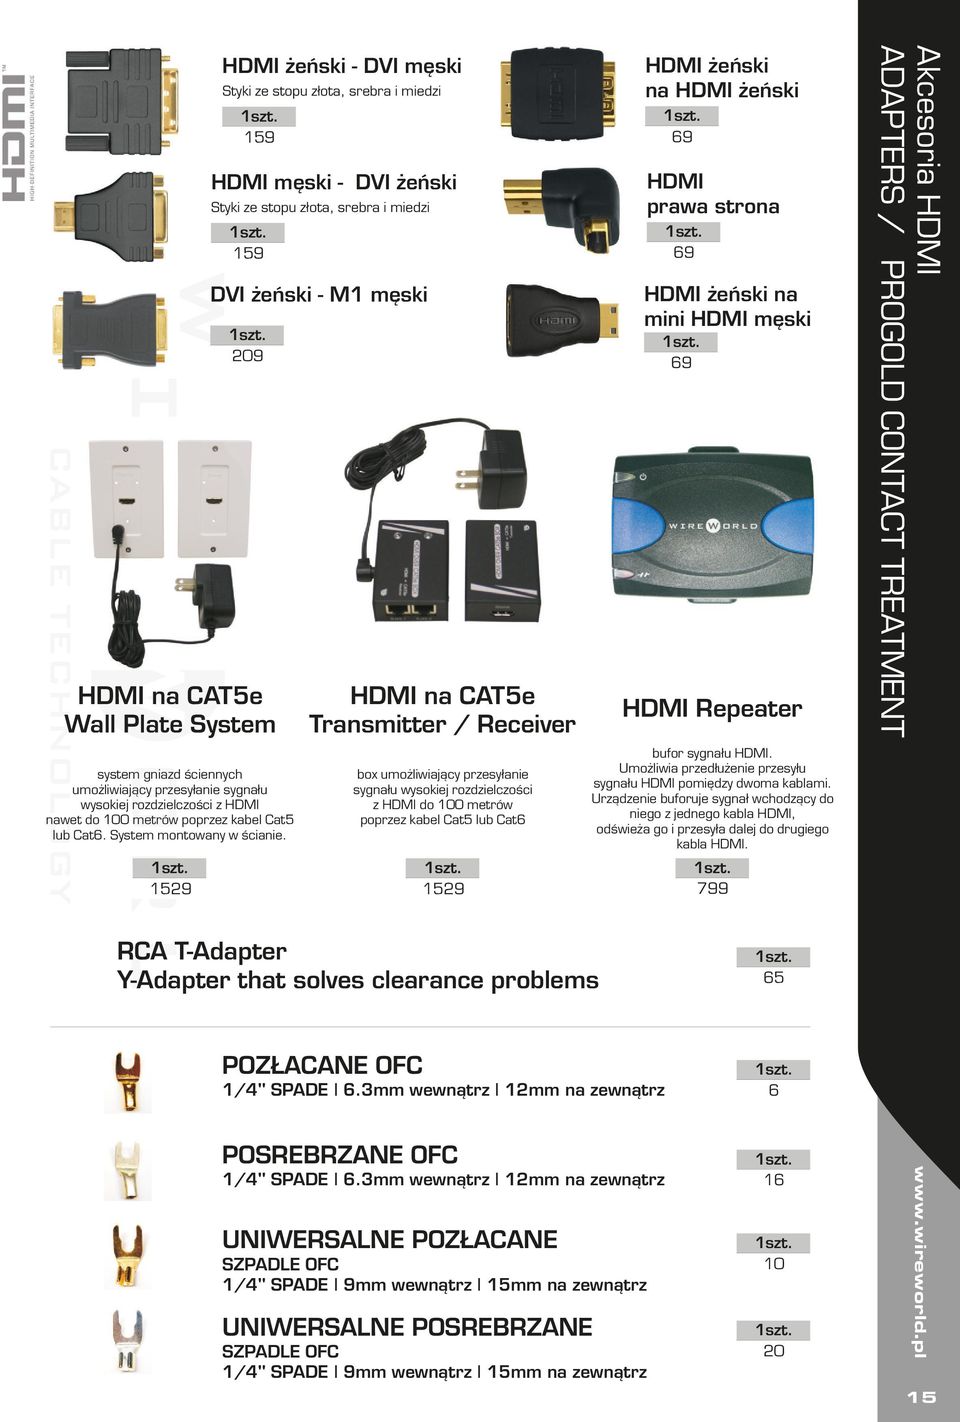 1529 HDMI na CAT5e Transmitter / Receiver box umożliwiający przesyłanie sygnału wysokiej rozdzielczości z HDMI do 100 metrów poprzez kabel Cat5 lub Cat6 1529 HDMI żeński na HDMI żeński 69 HDMI prawa